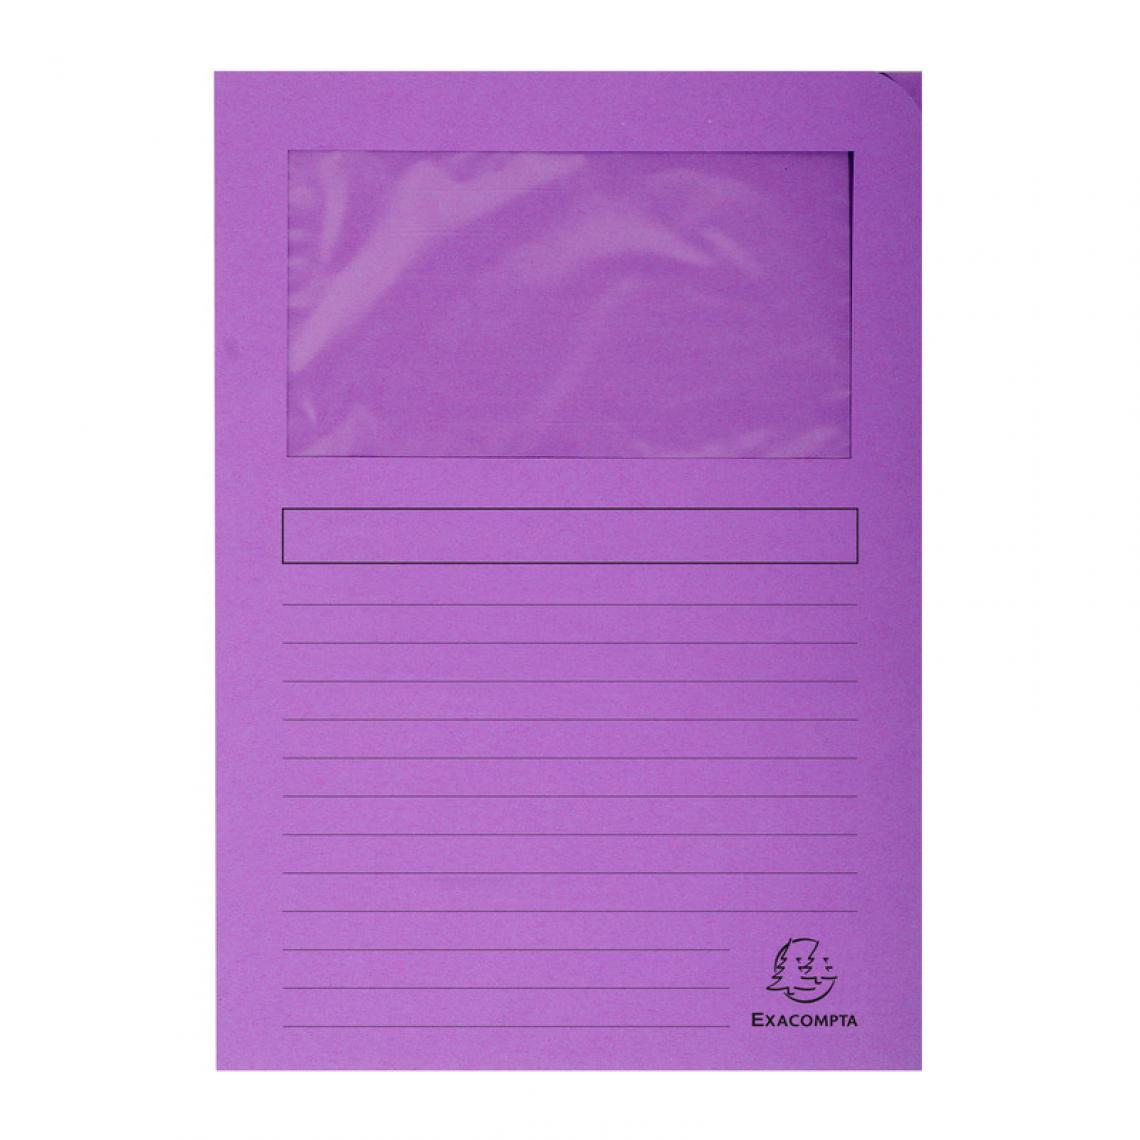 Exacompta - EXACOMPTA Chemise à fenêtre FOREVER, A4, 120 g/m2, violet () - Accessoires Bureau